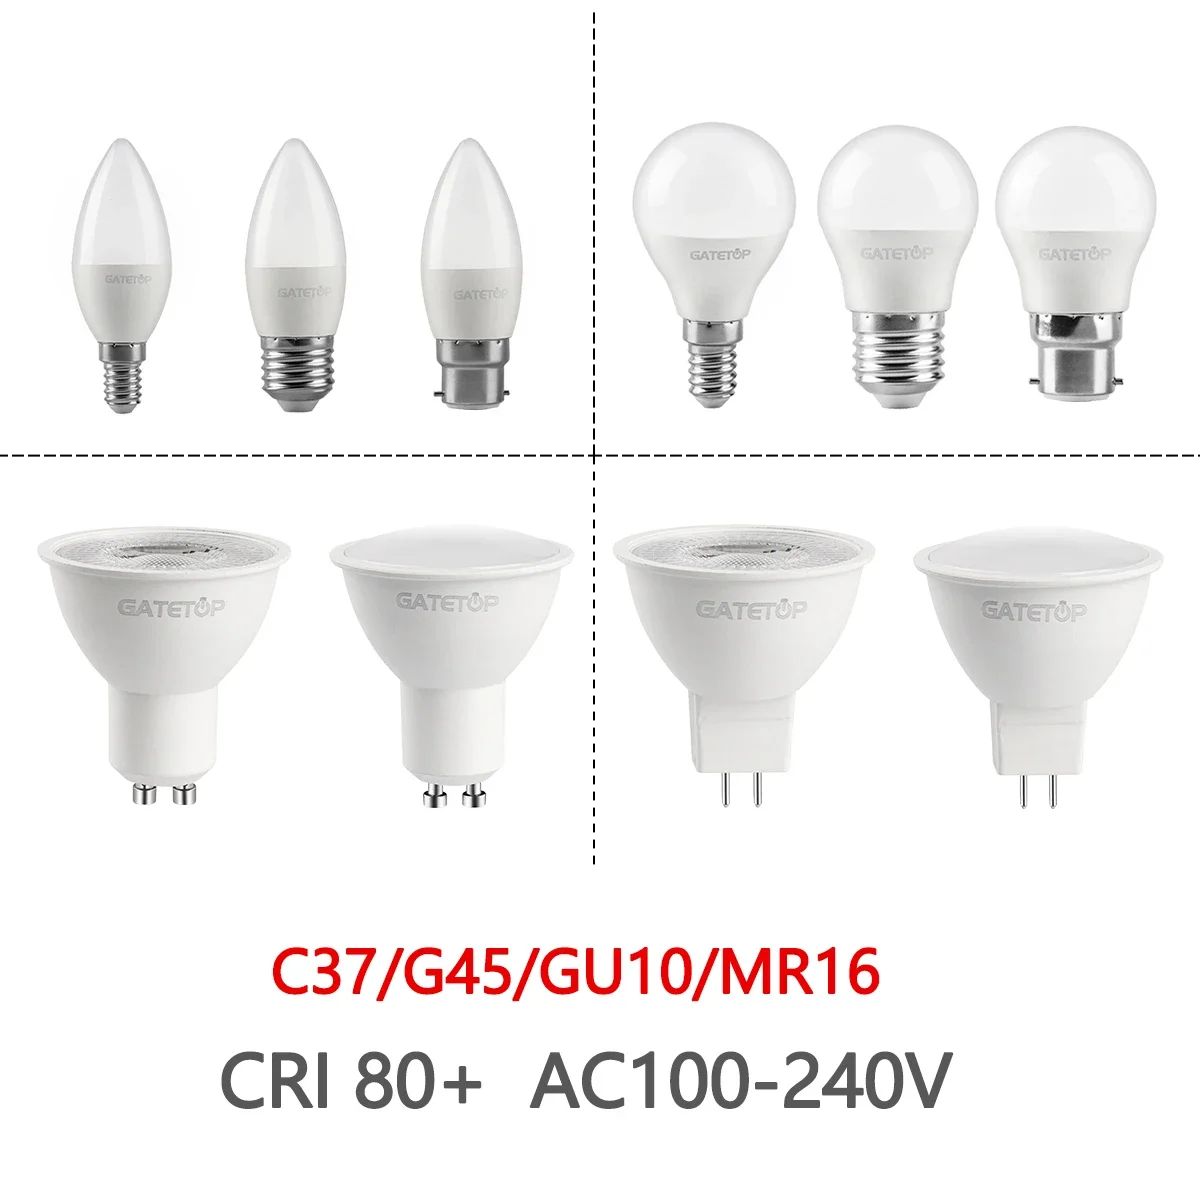 

30pcs GU10 G45 C37 3W 9W LED Bulb Lamps Spotligt E27 E14 B22 screw socket AC220V 110V Light Bulb,for Indoor kitchen living room